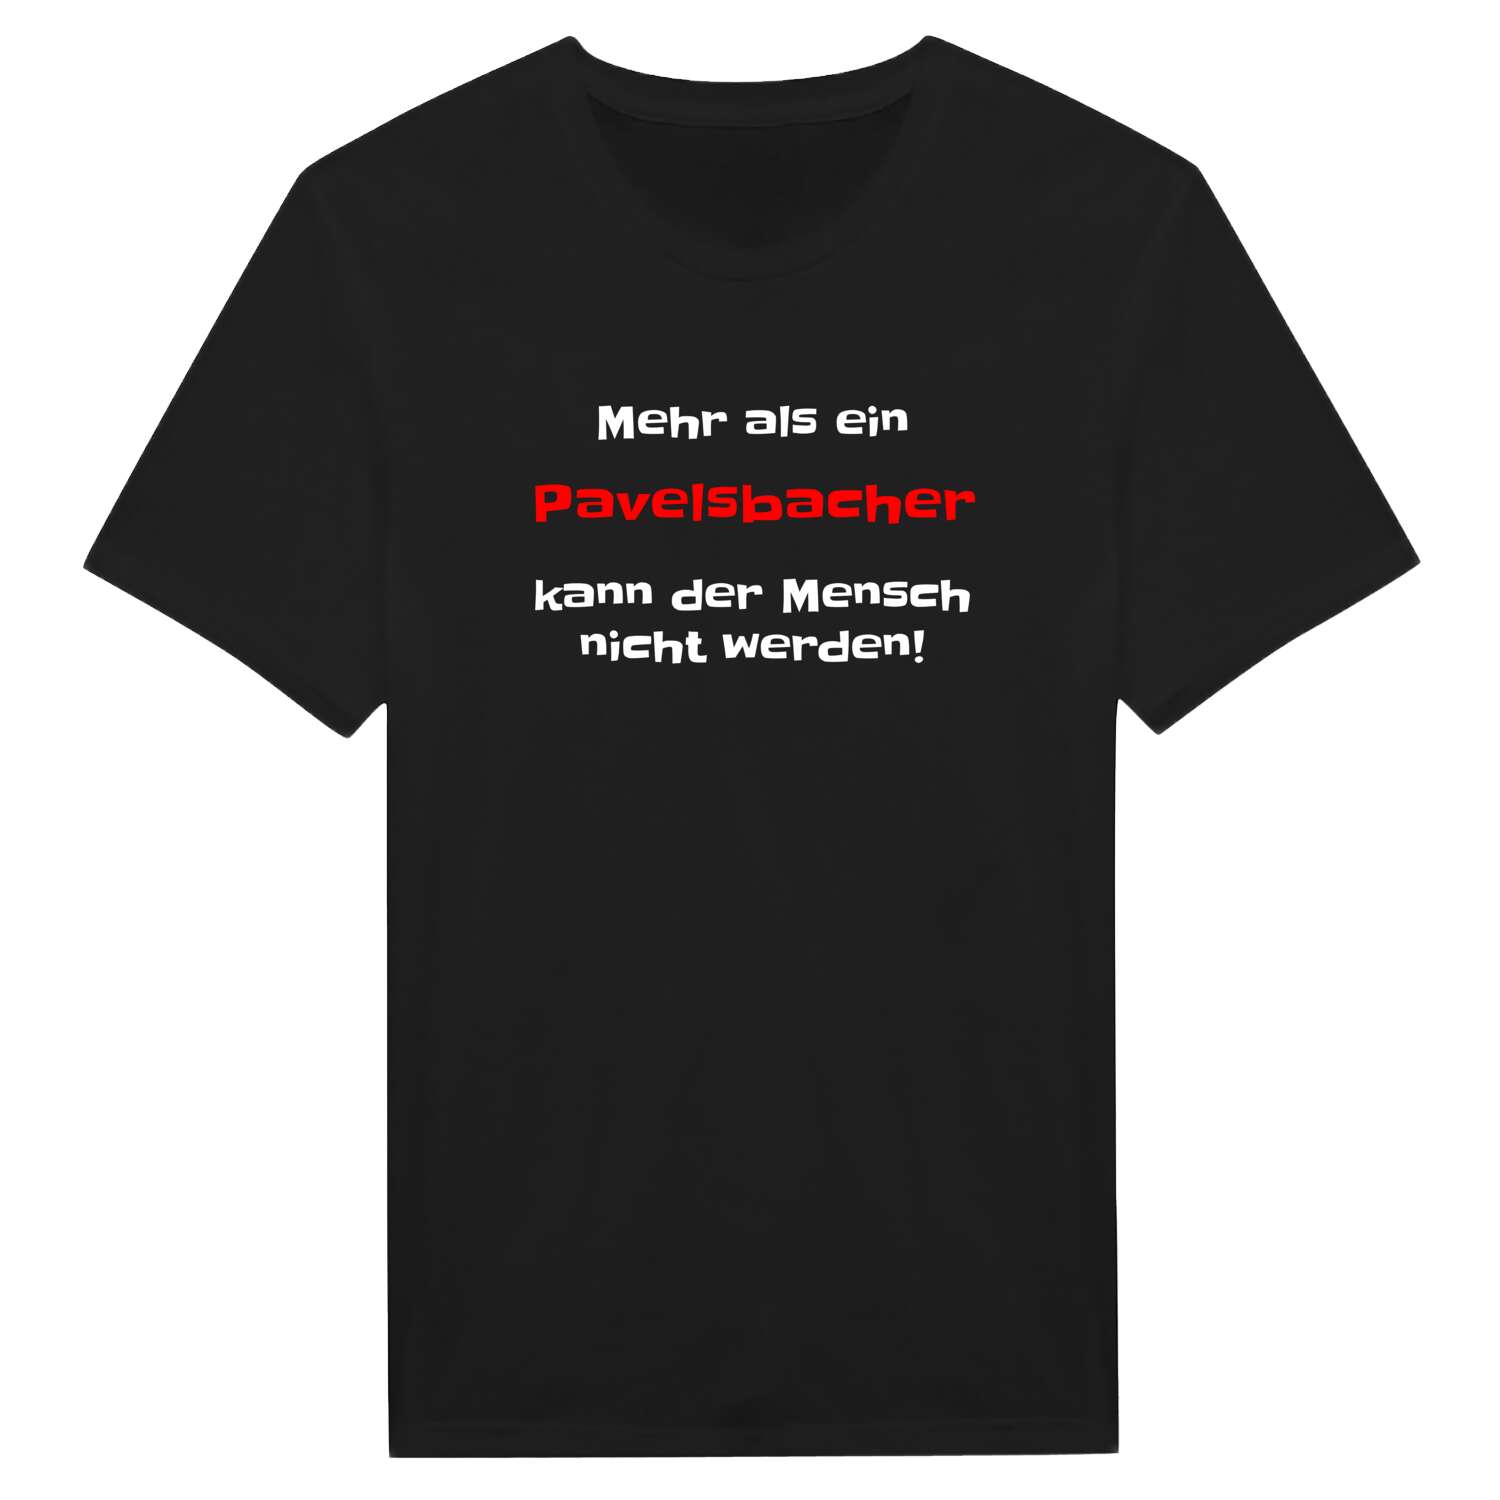 Pavelsbach T-Shirt »Mehr als ein«